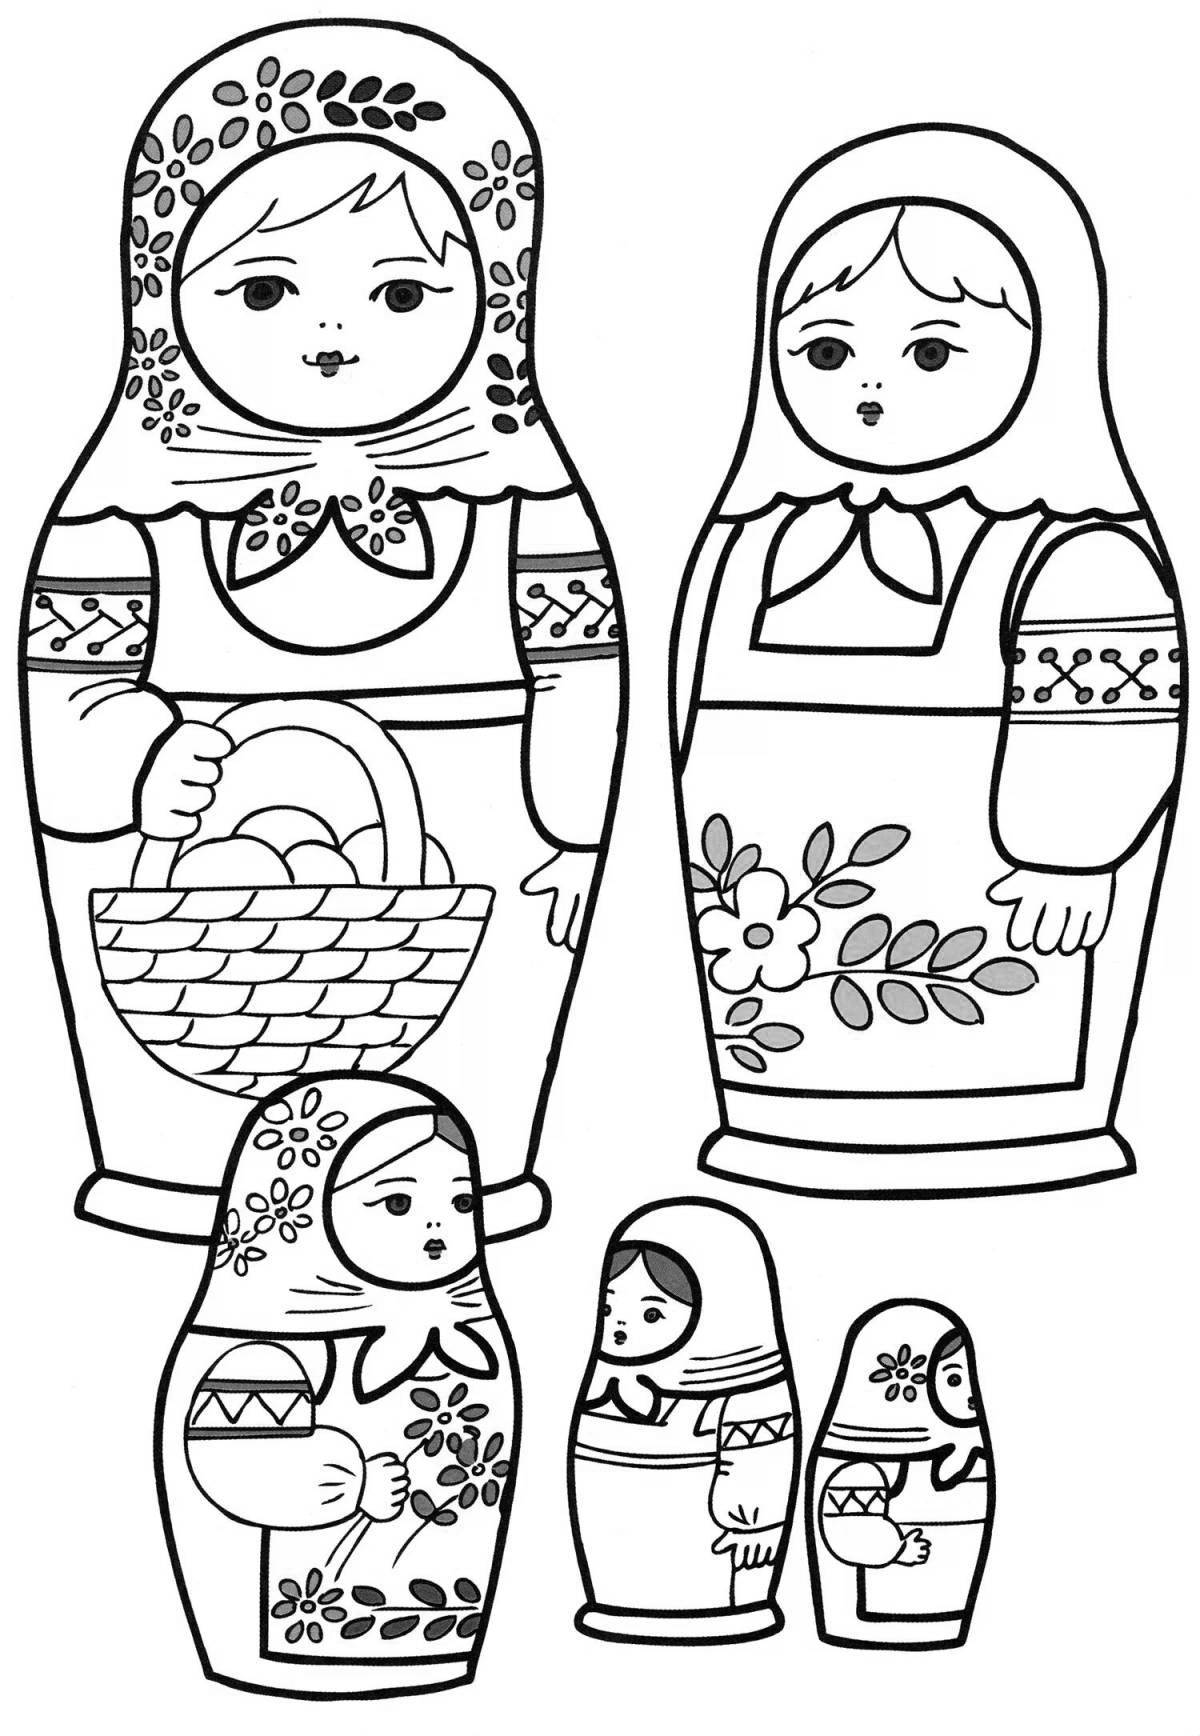 Fun Russian folk coloring toy